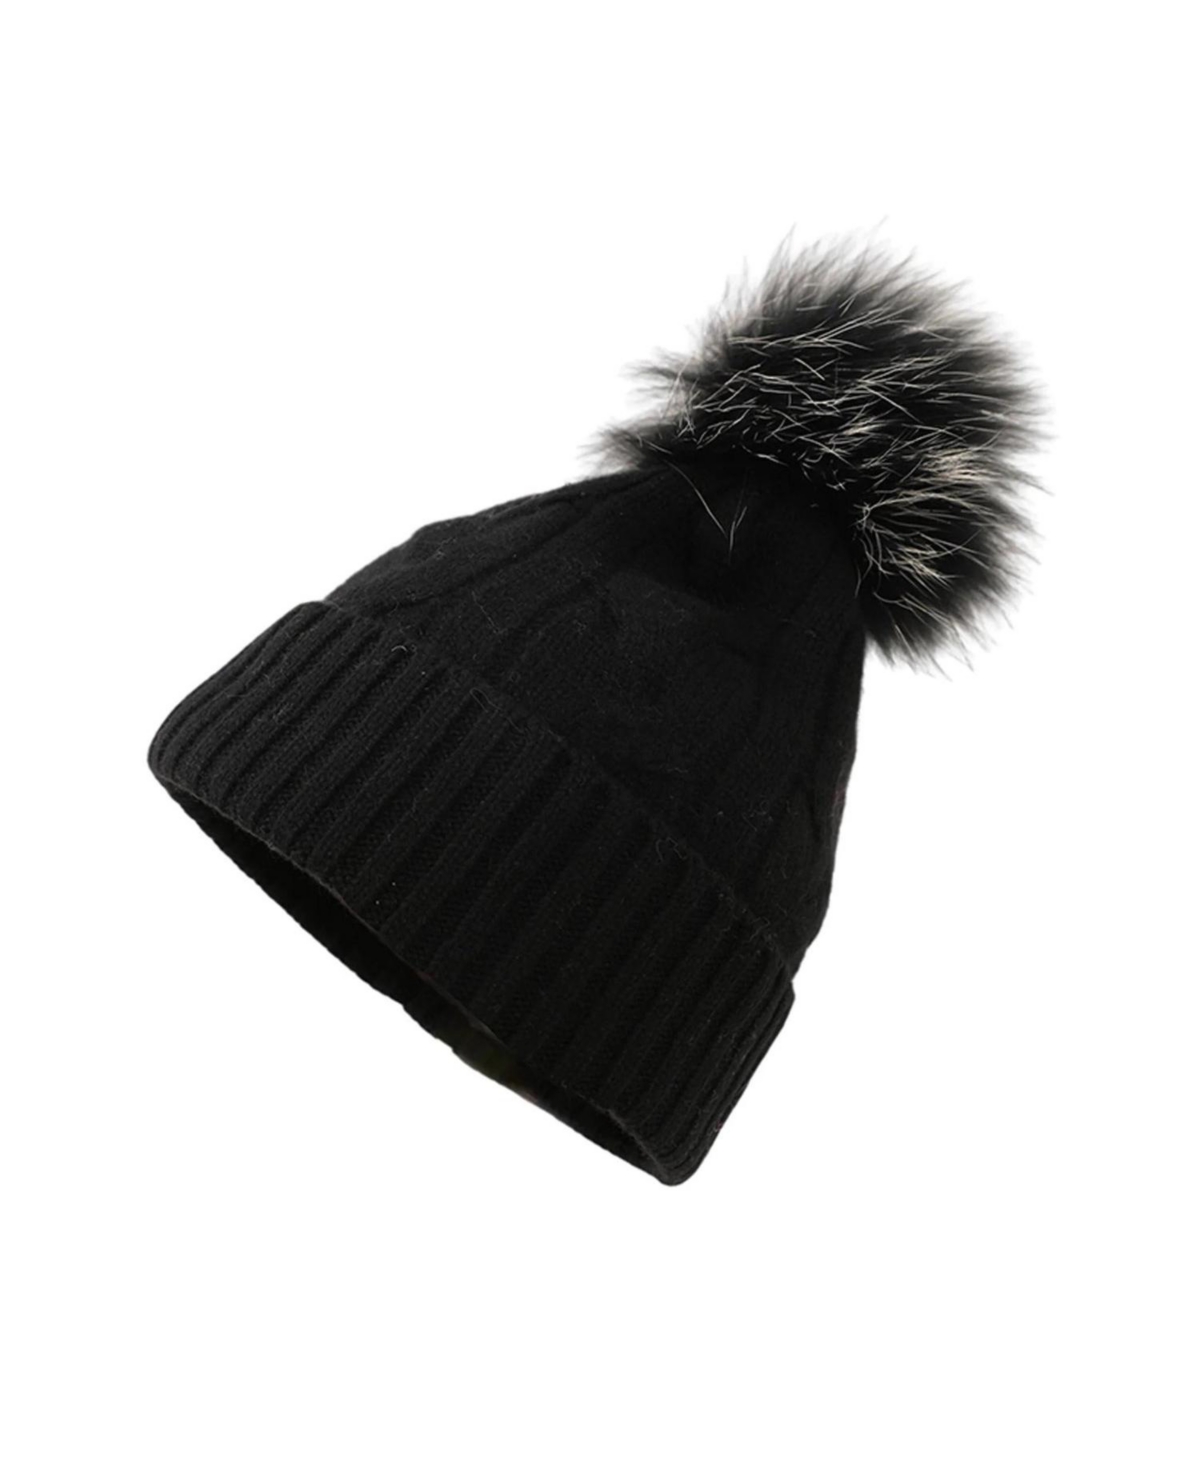 Bellemere Women's Soft Cable-Knit Cashmere Hat - Black